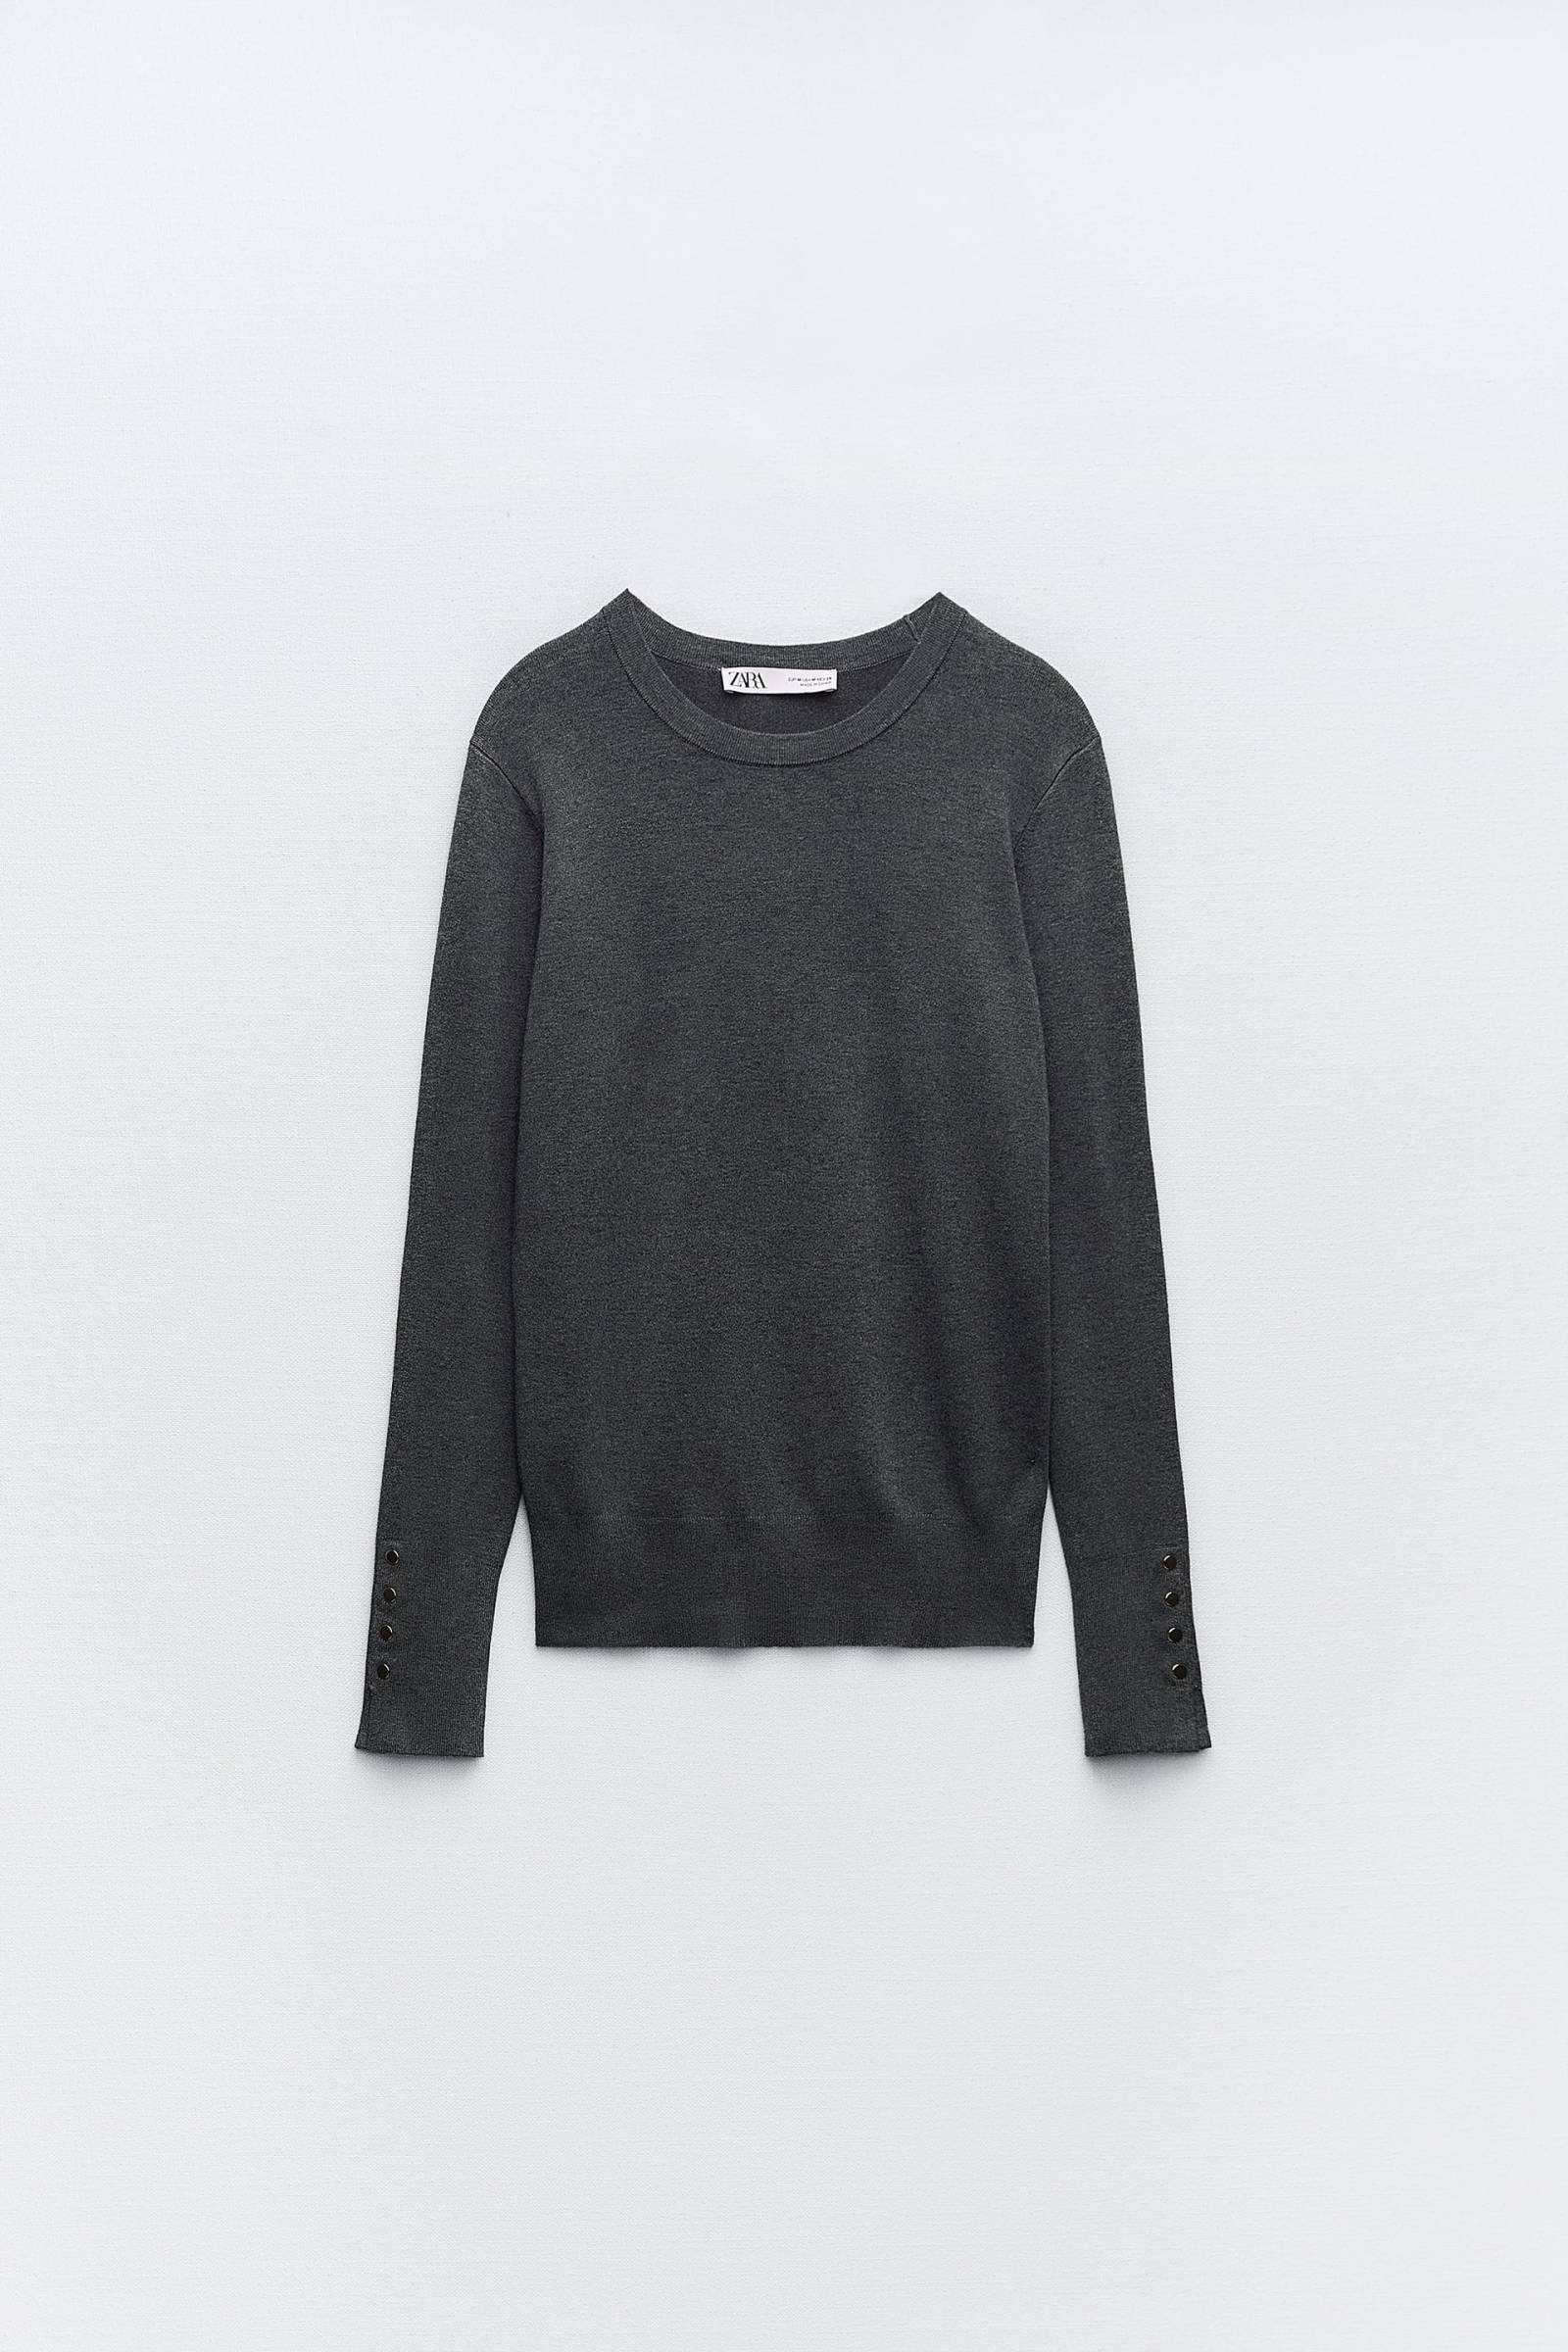 Szary sweter Zara